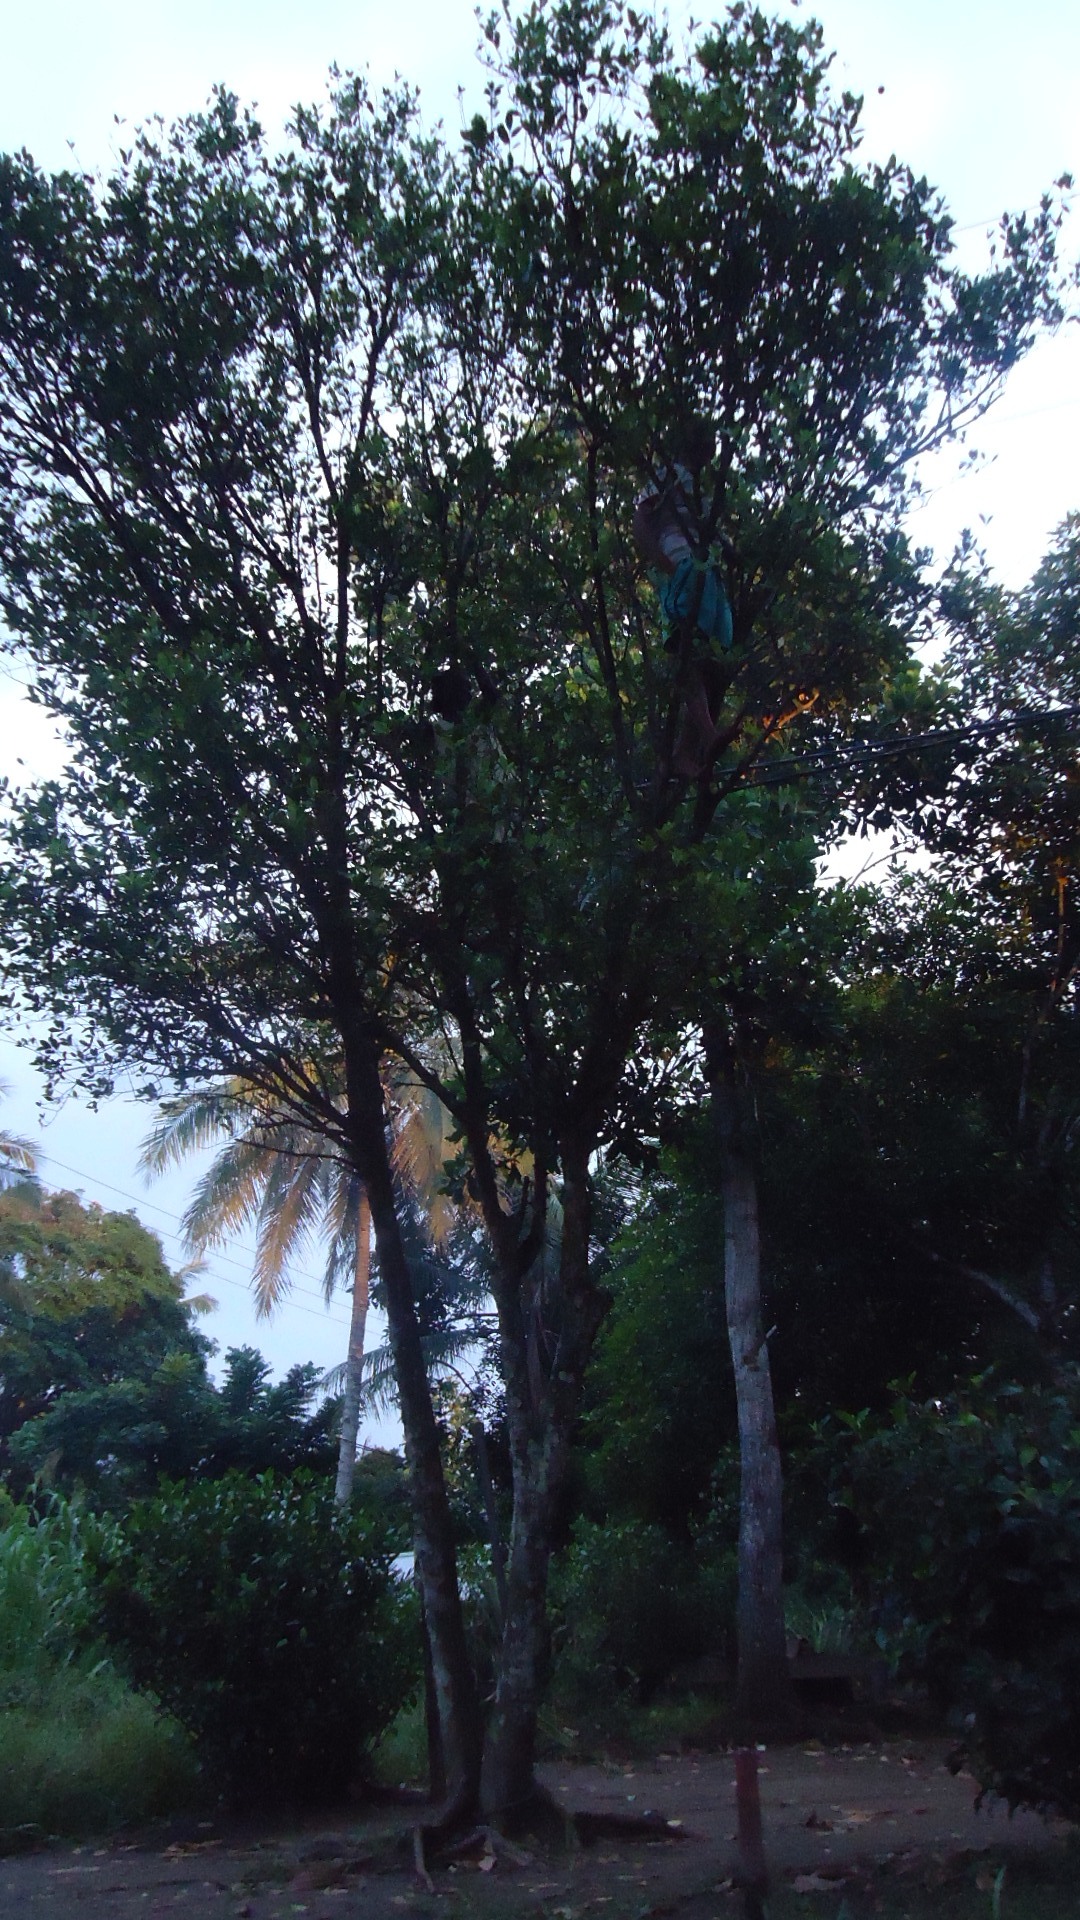 Girls Climbed the Tree